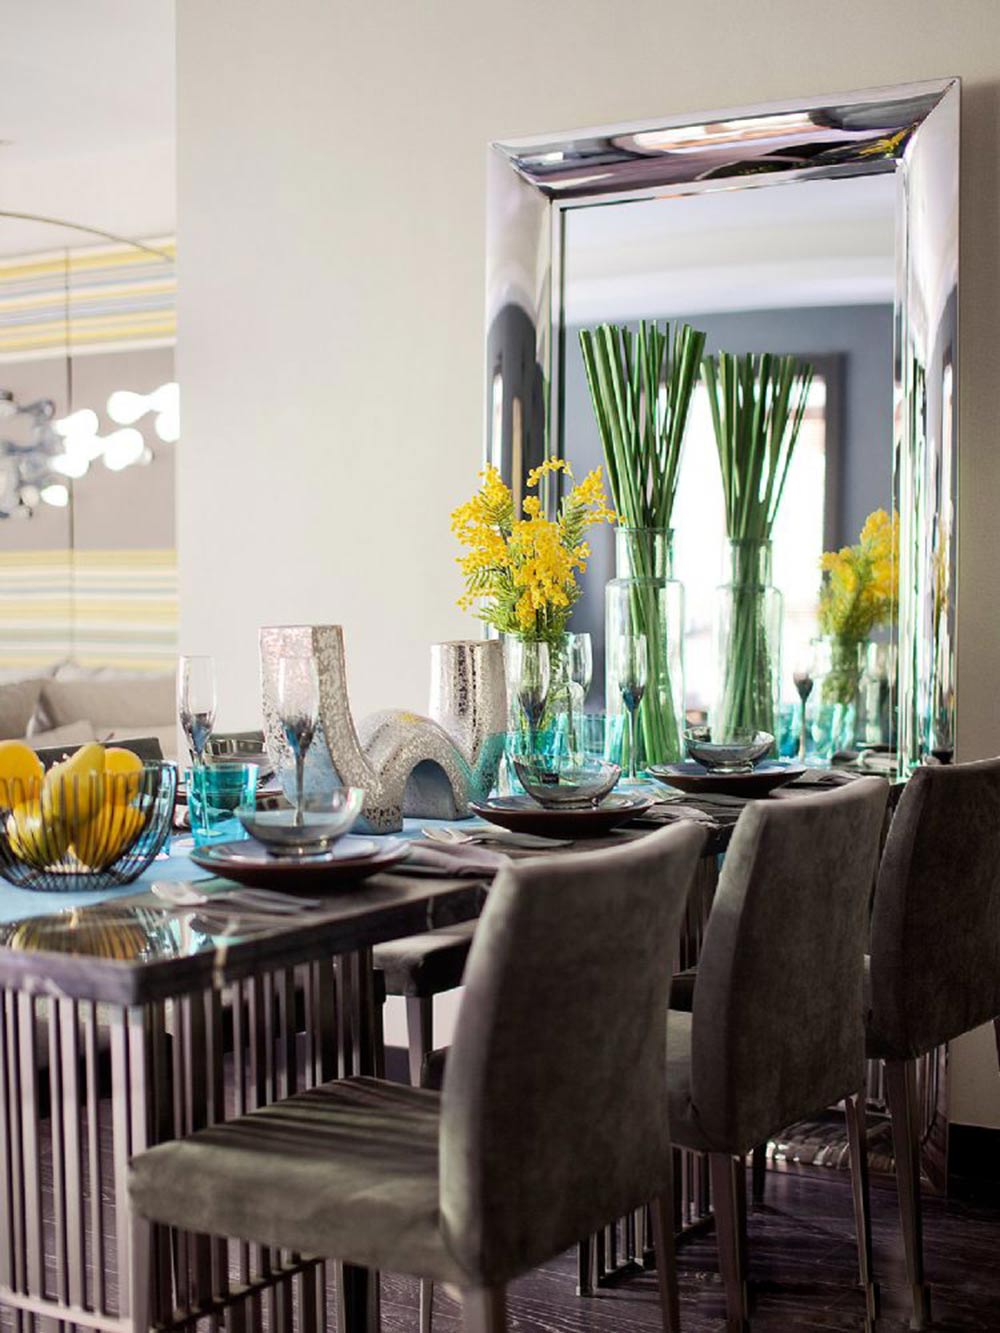 餐桌上黄色的鲜花和水果将自然气息带进室内，质朴清新，田园气息浓厚。